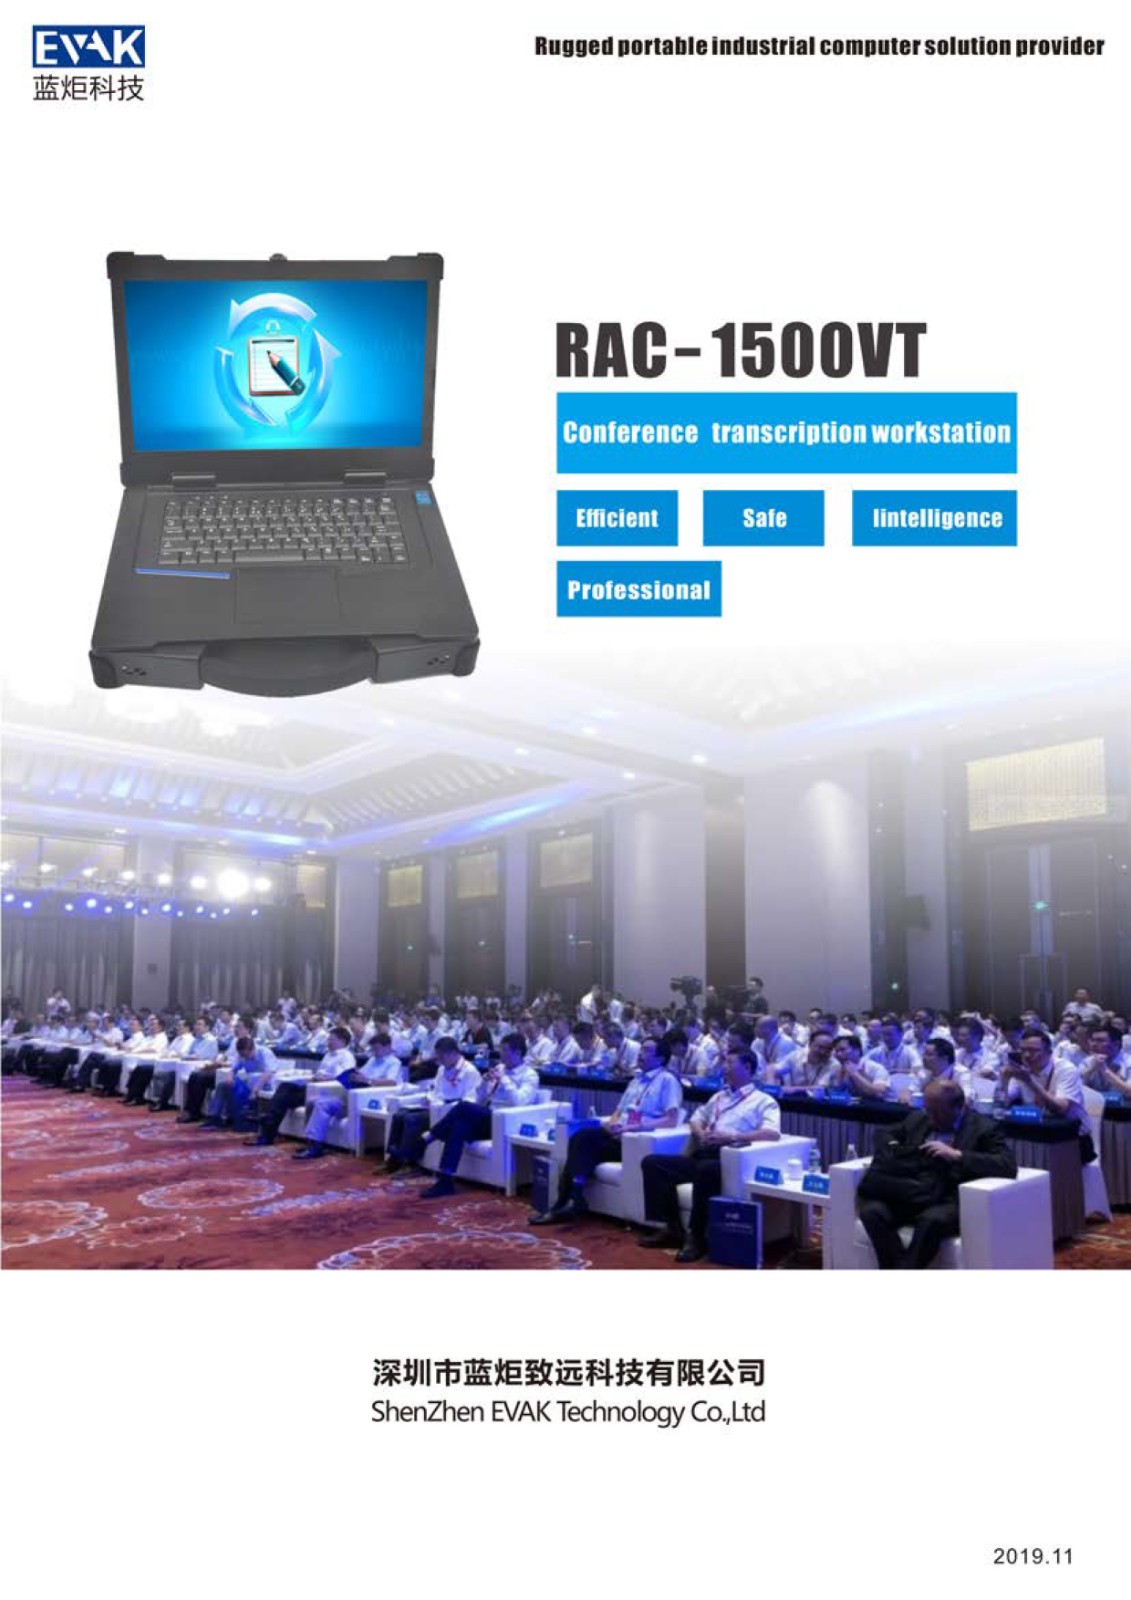 RAC-1500 VT datasheet-1.jpg